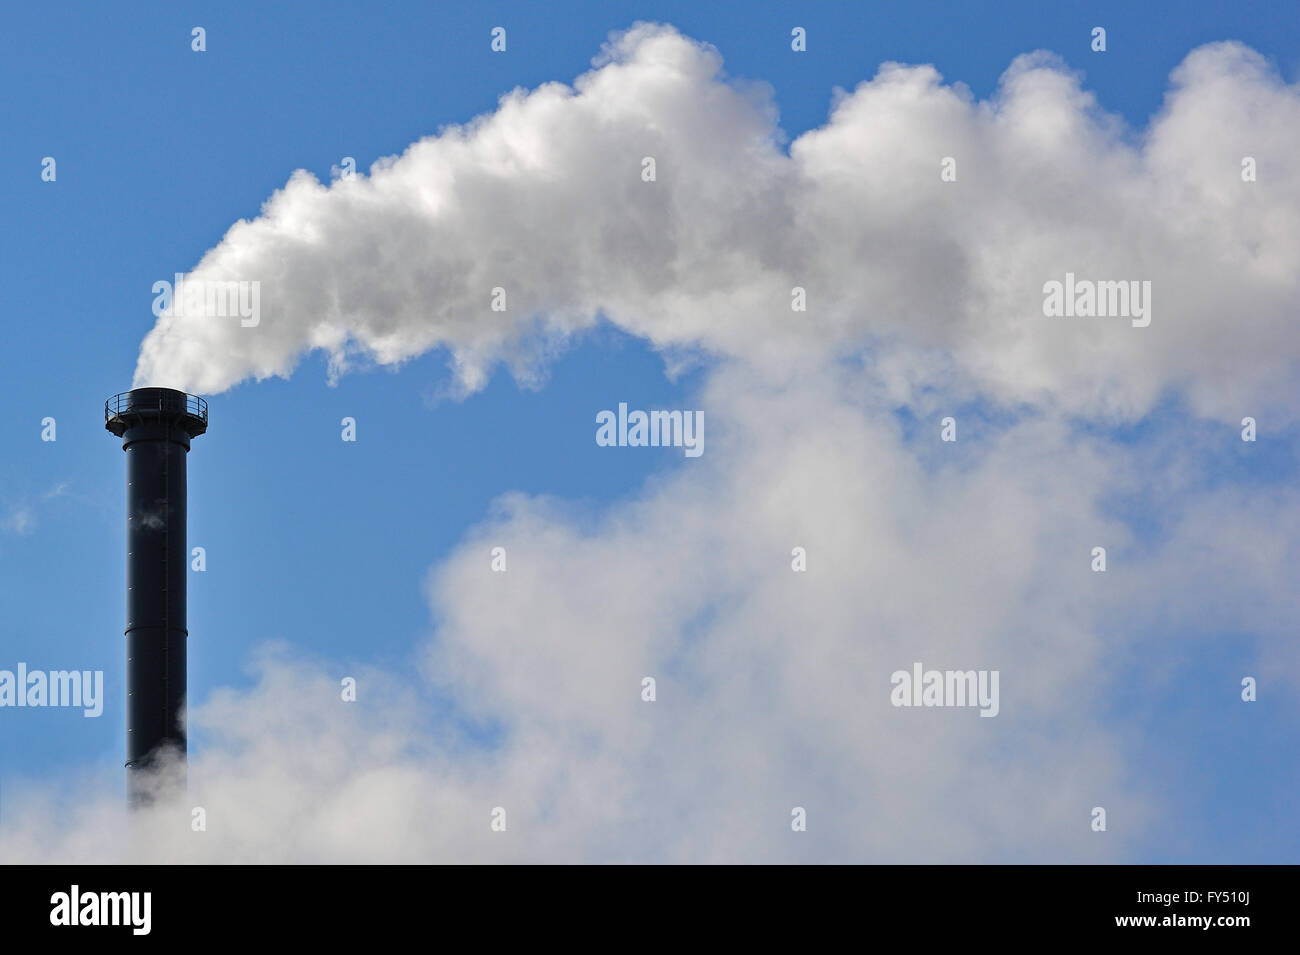 Konzeptionelle Darstellung der Luftverschmutzung durch Industrie zeigt Kamin Ausstellung Rauch in die Atmosphäre Stockfoto